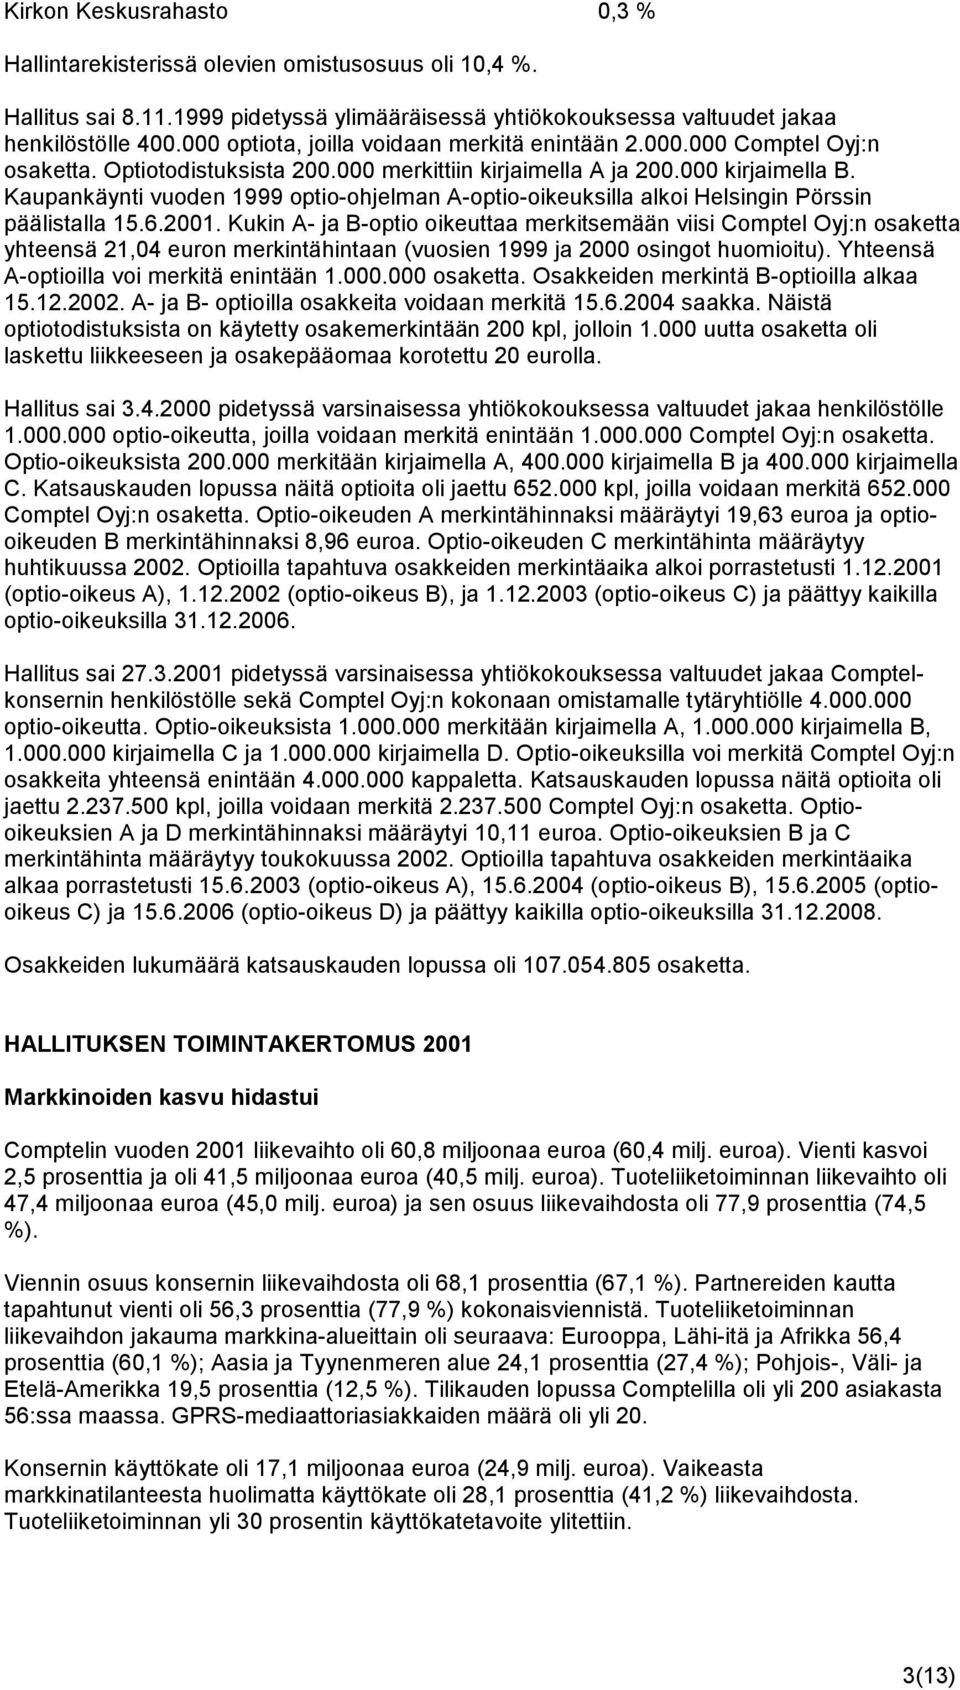 Kaupankäynti vuoden 1999 optio-ohjelman A-optio-oikeuksilla alkoi Helsingin Pörssin päälistalla 15.6.2001.